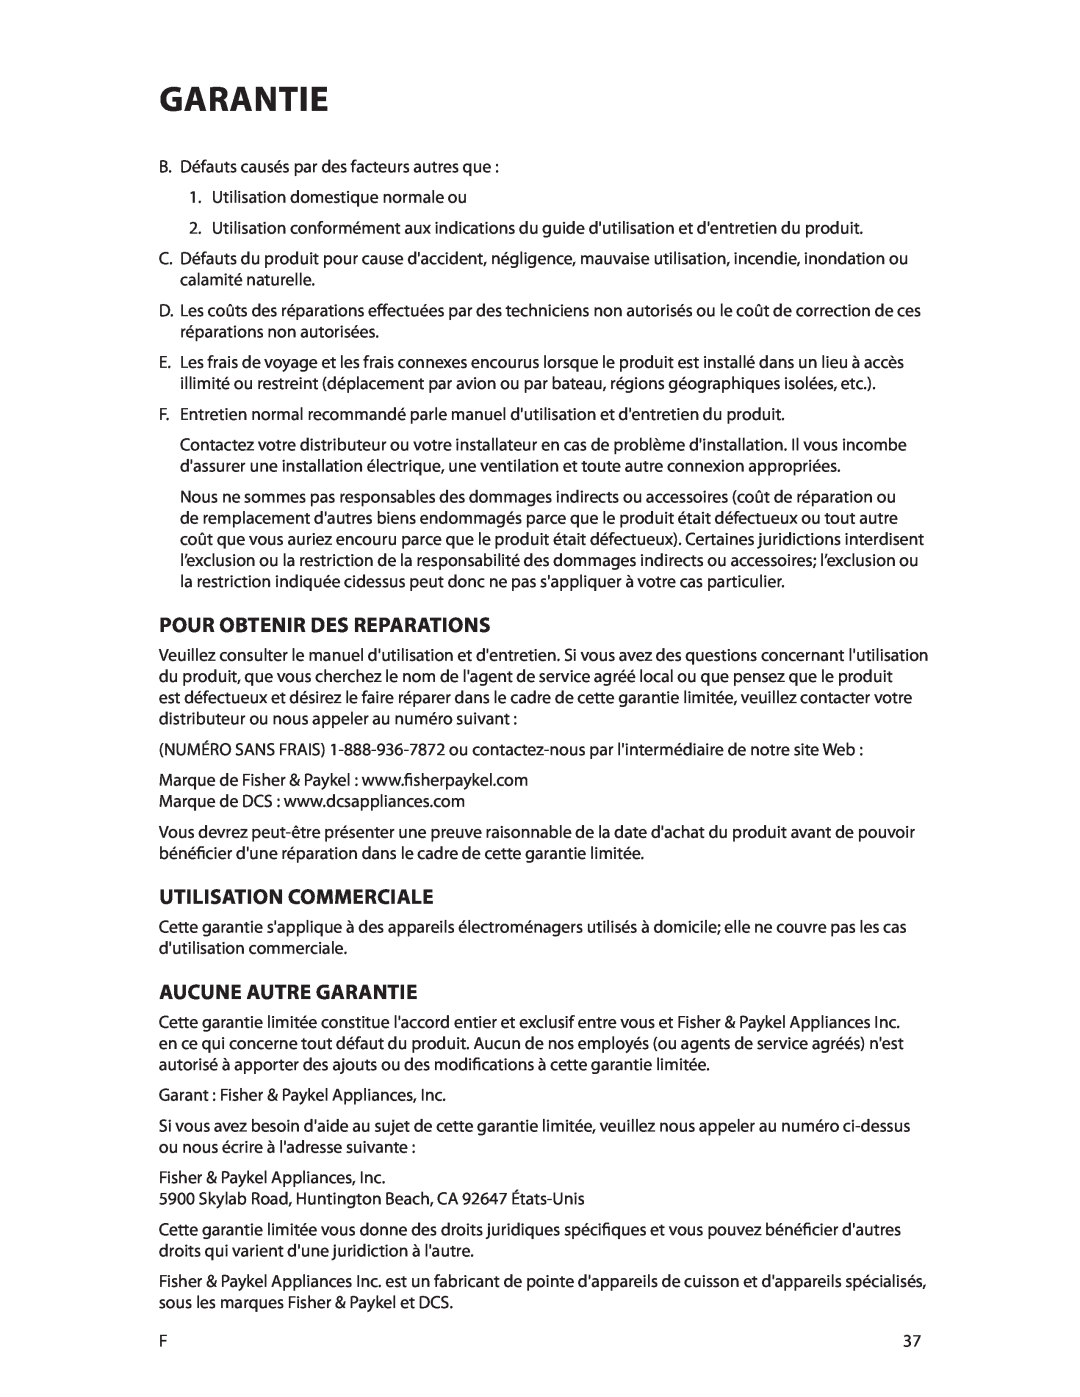 DCS CMOH30SS manual Pour Obtenir Des Reparations, Utilisation Commerciale, Aucune Autre Garantie 